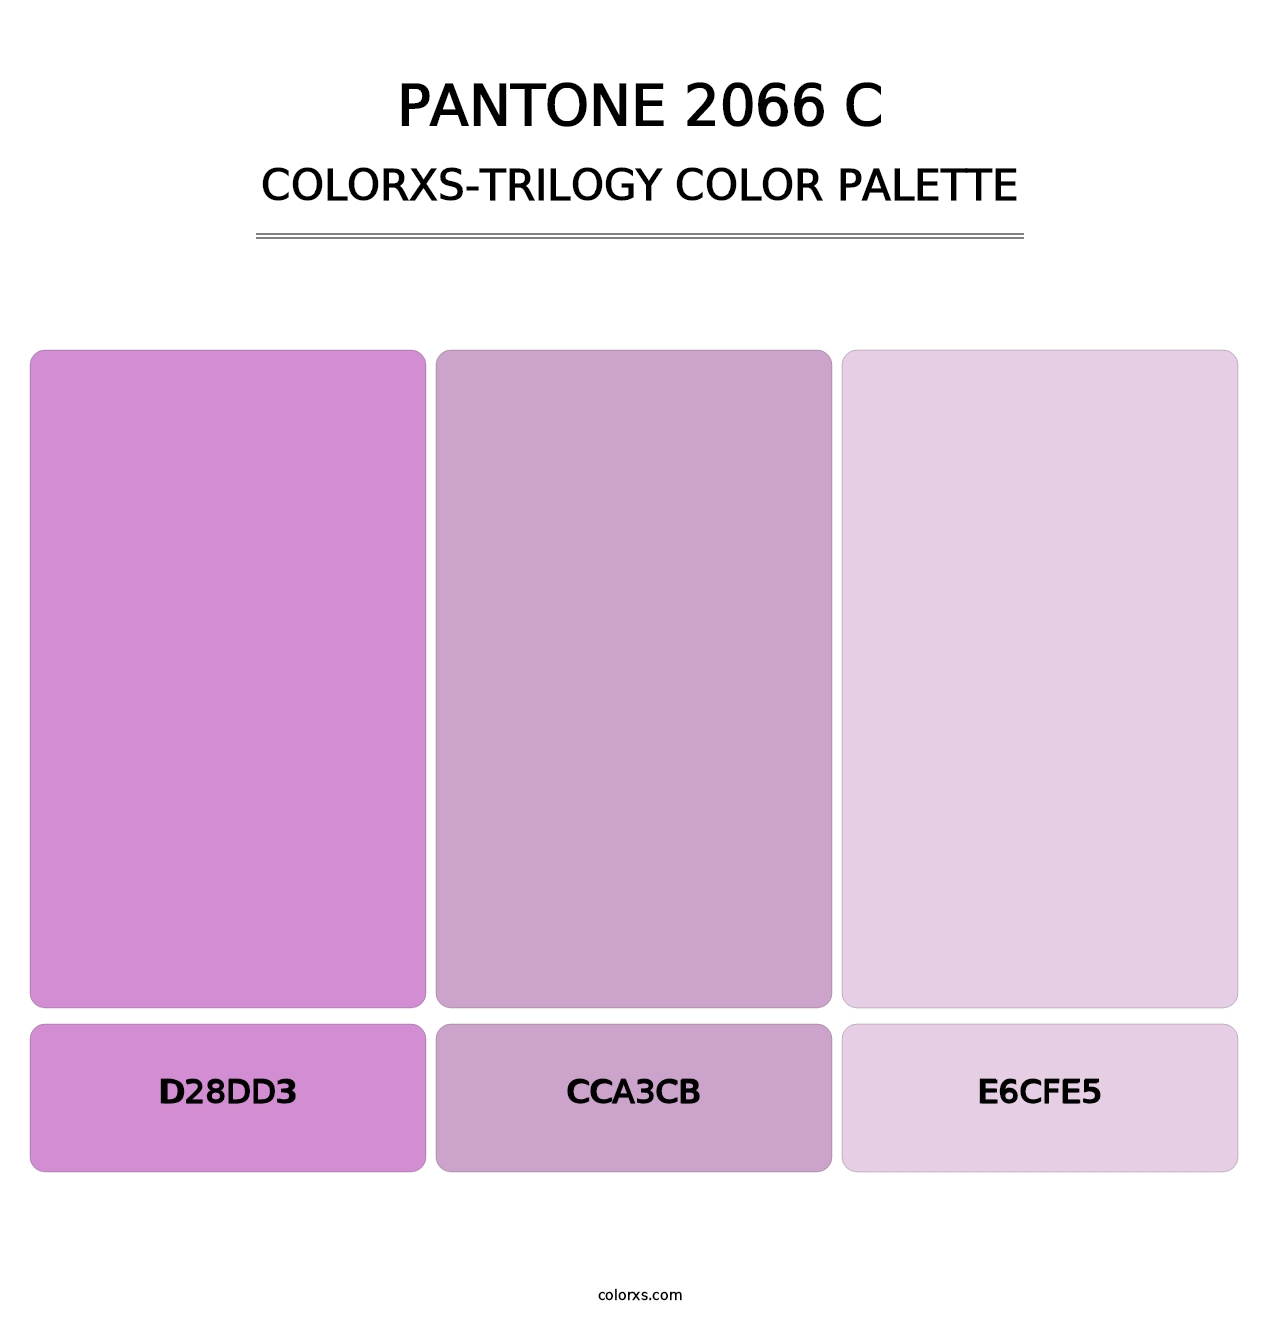 PANTONE 2066 C - Colorxs Trilogy Palette